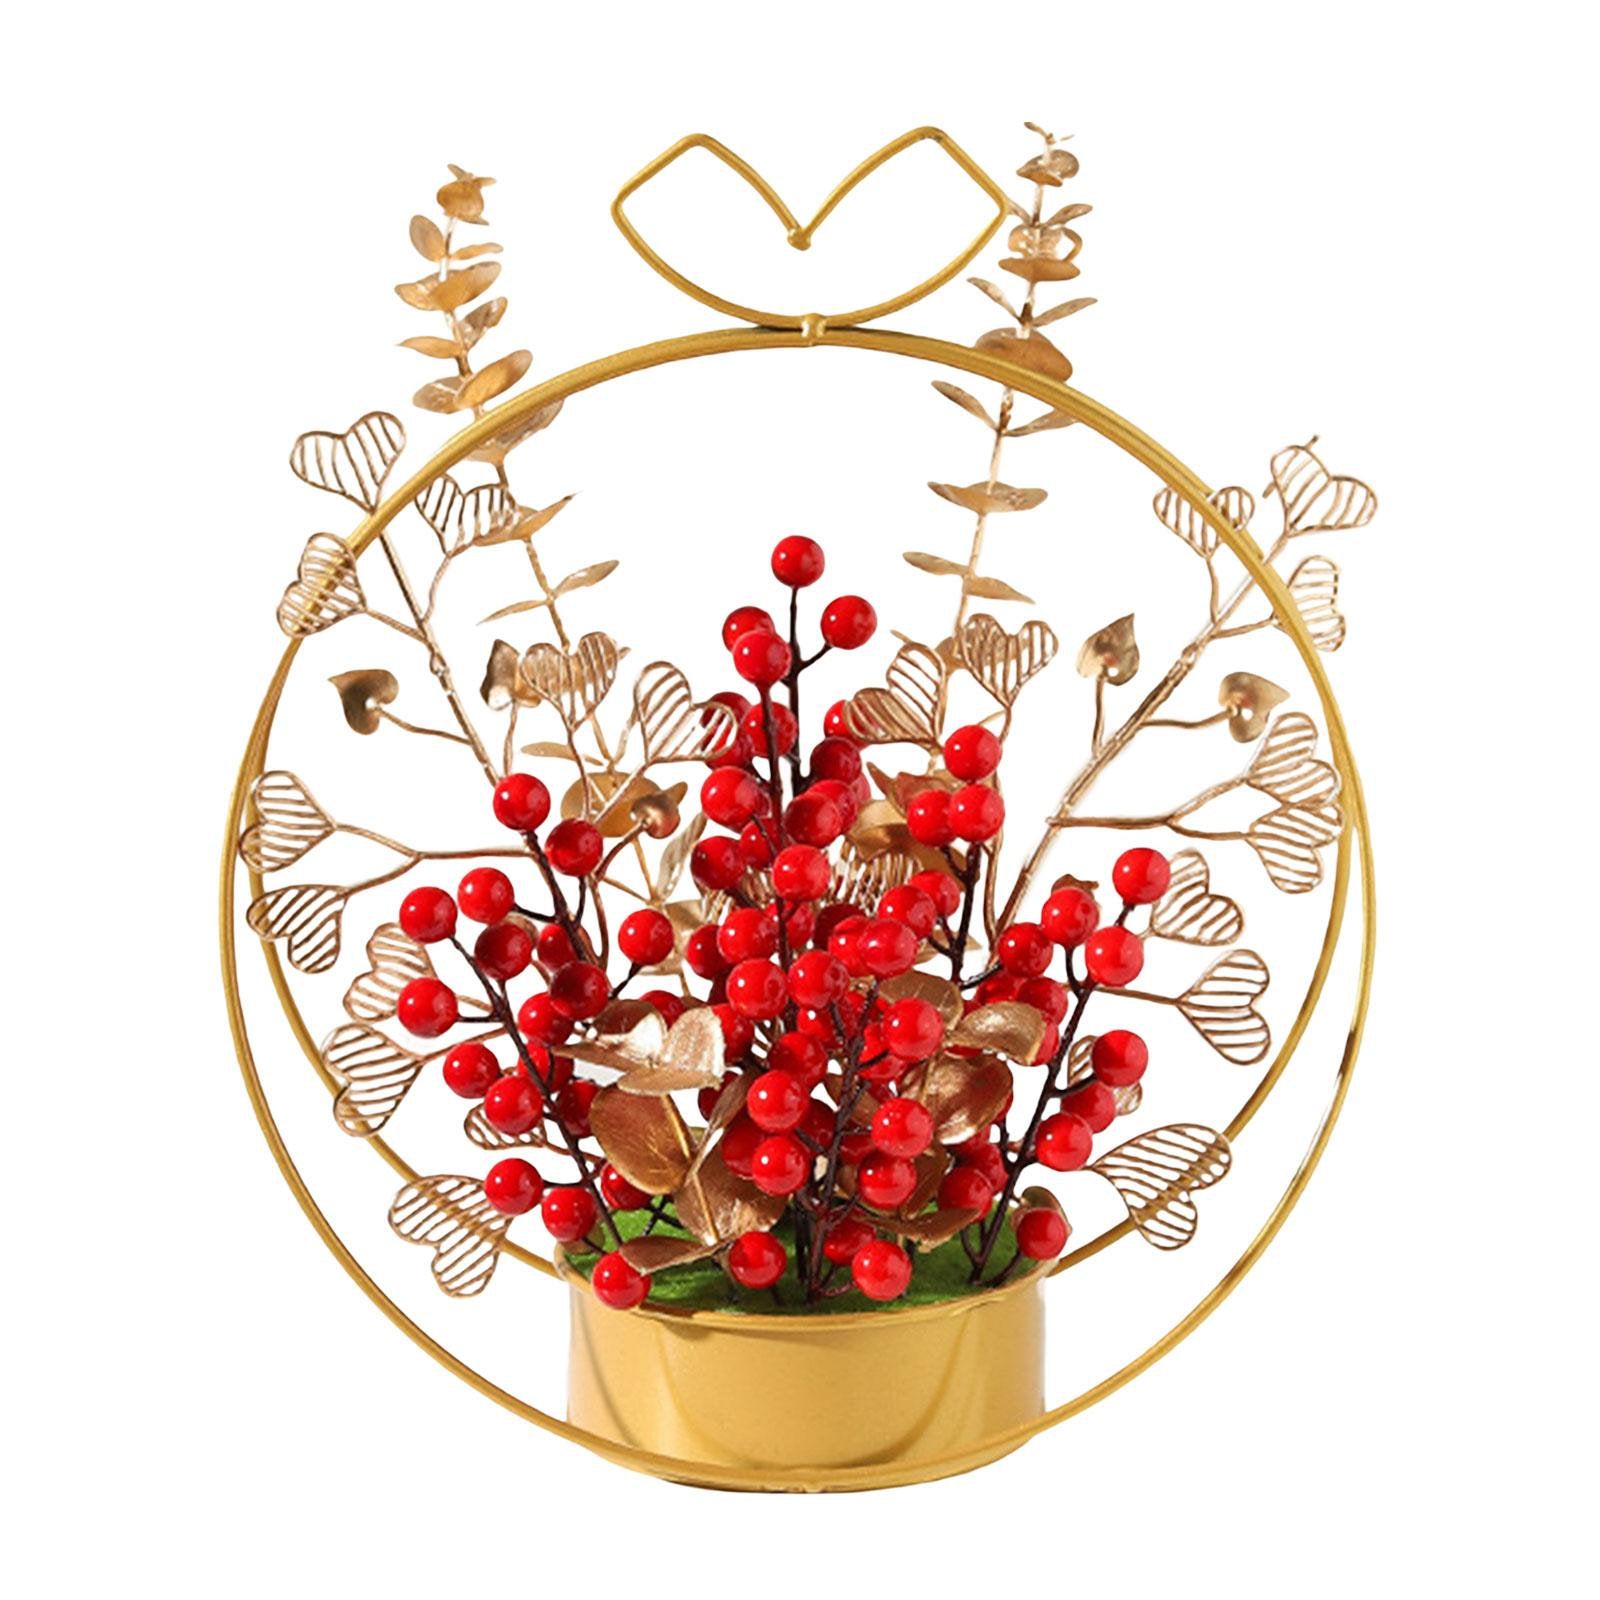 Flower Basket Ornament | HOG- Home. Office. Garden online marketplace